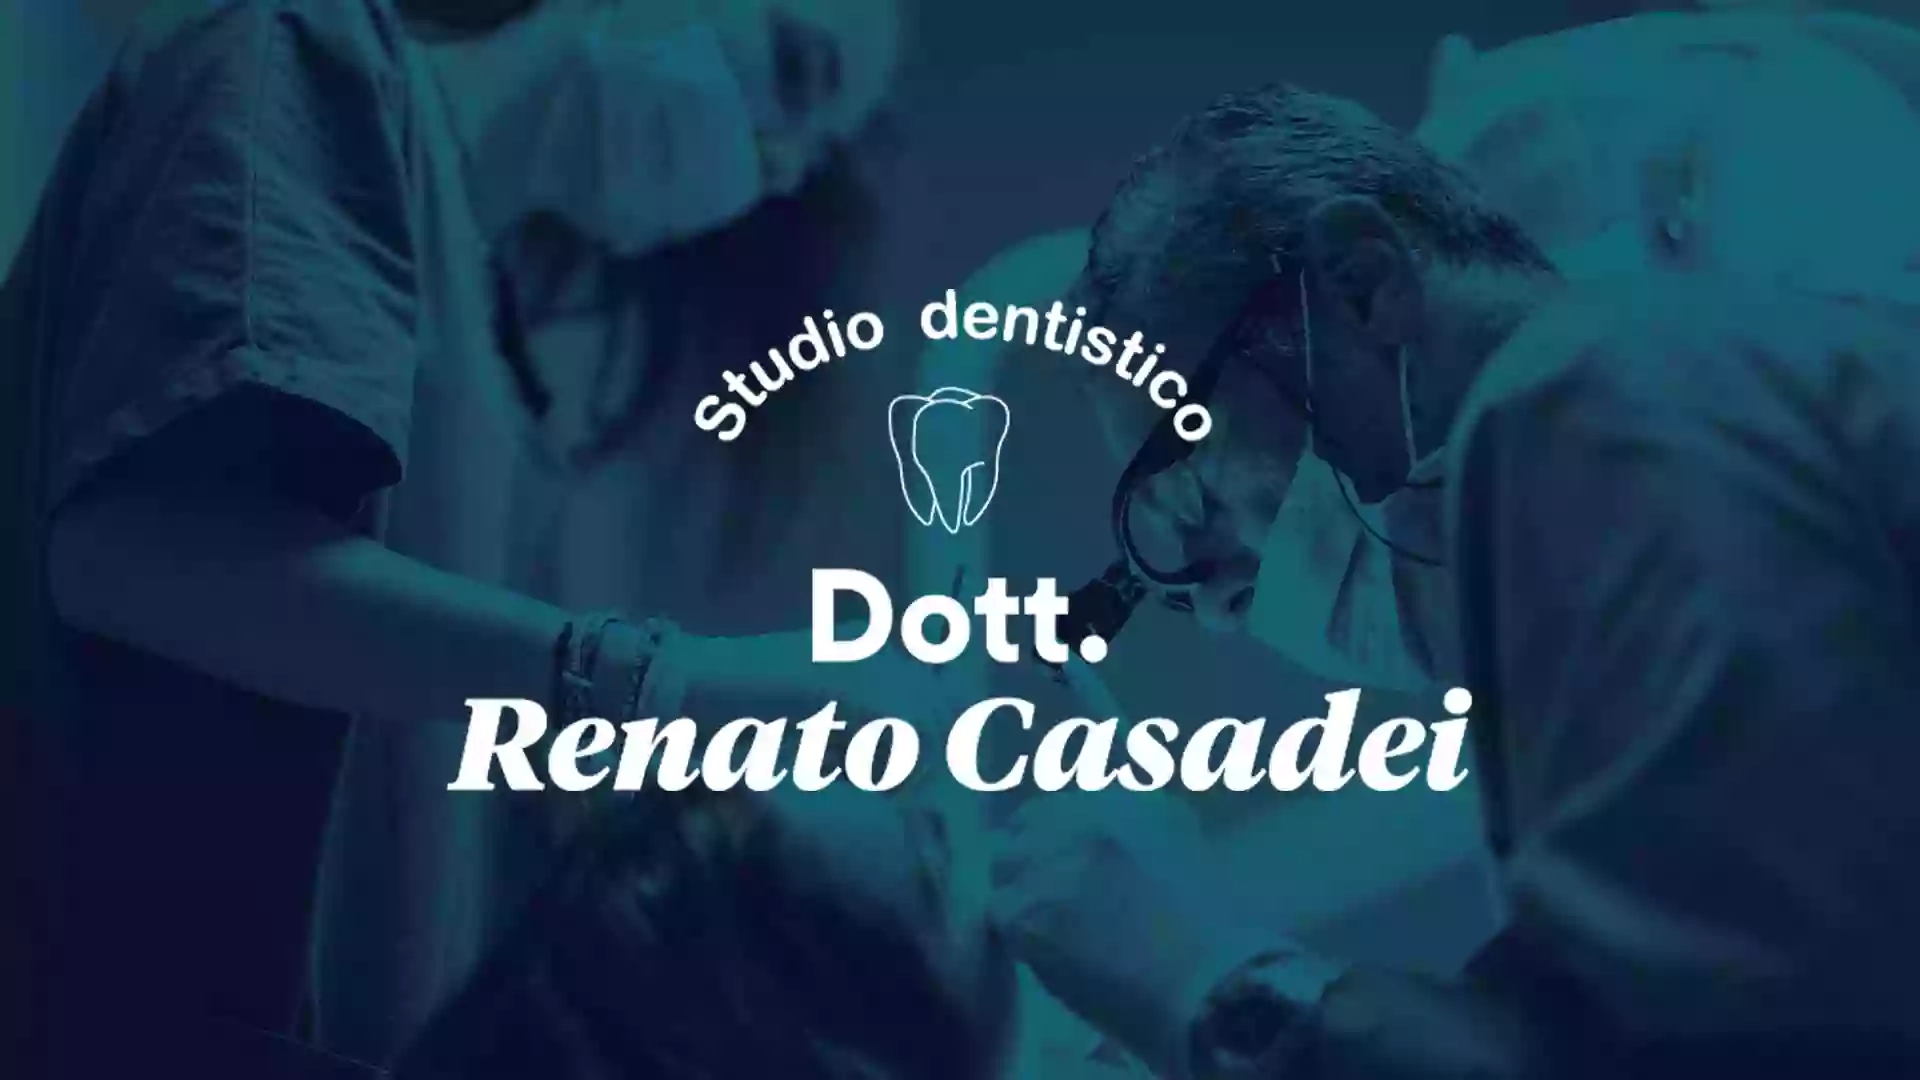 Odontoiatra Dentista Renato Casadei